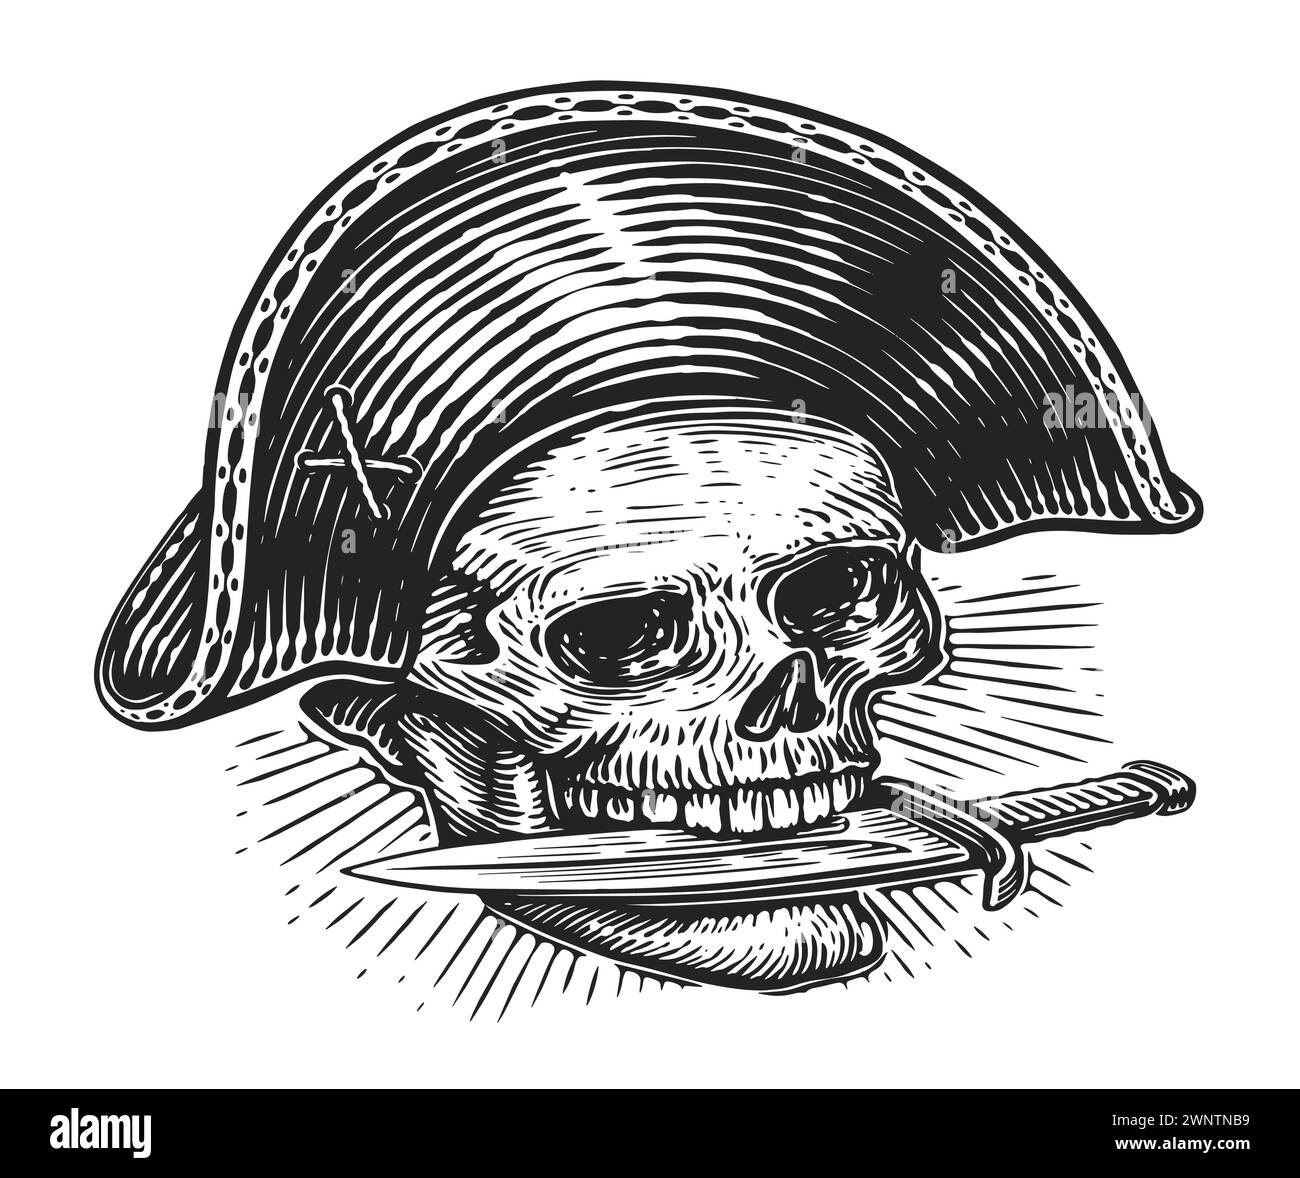 Pirata con daga en los dientes. Esqueleto del cráneo Jolly Roger. Dibujado a mano boceto vintage ilustración vectorial Ilustración del Vector